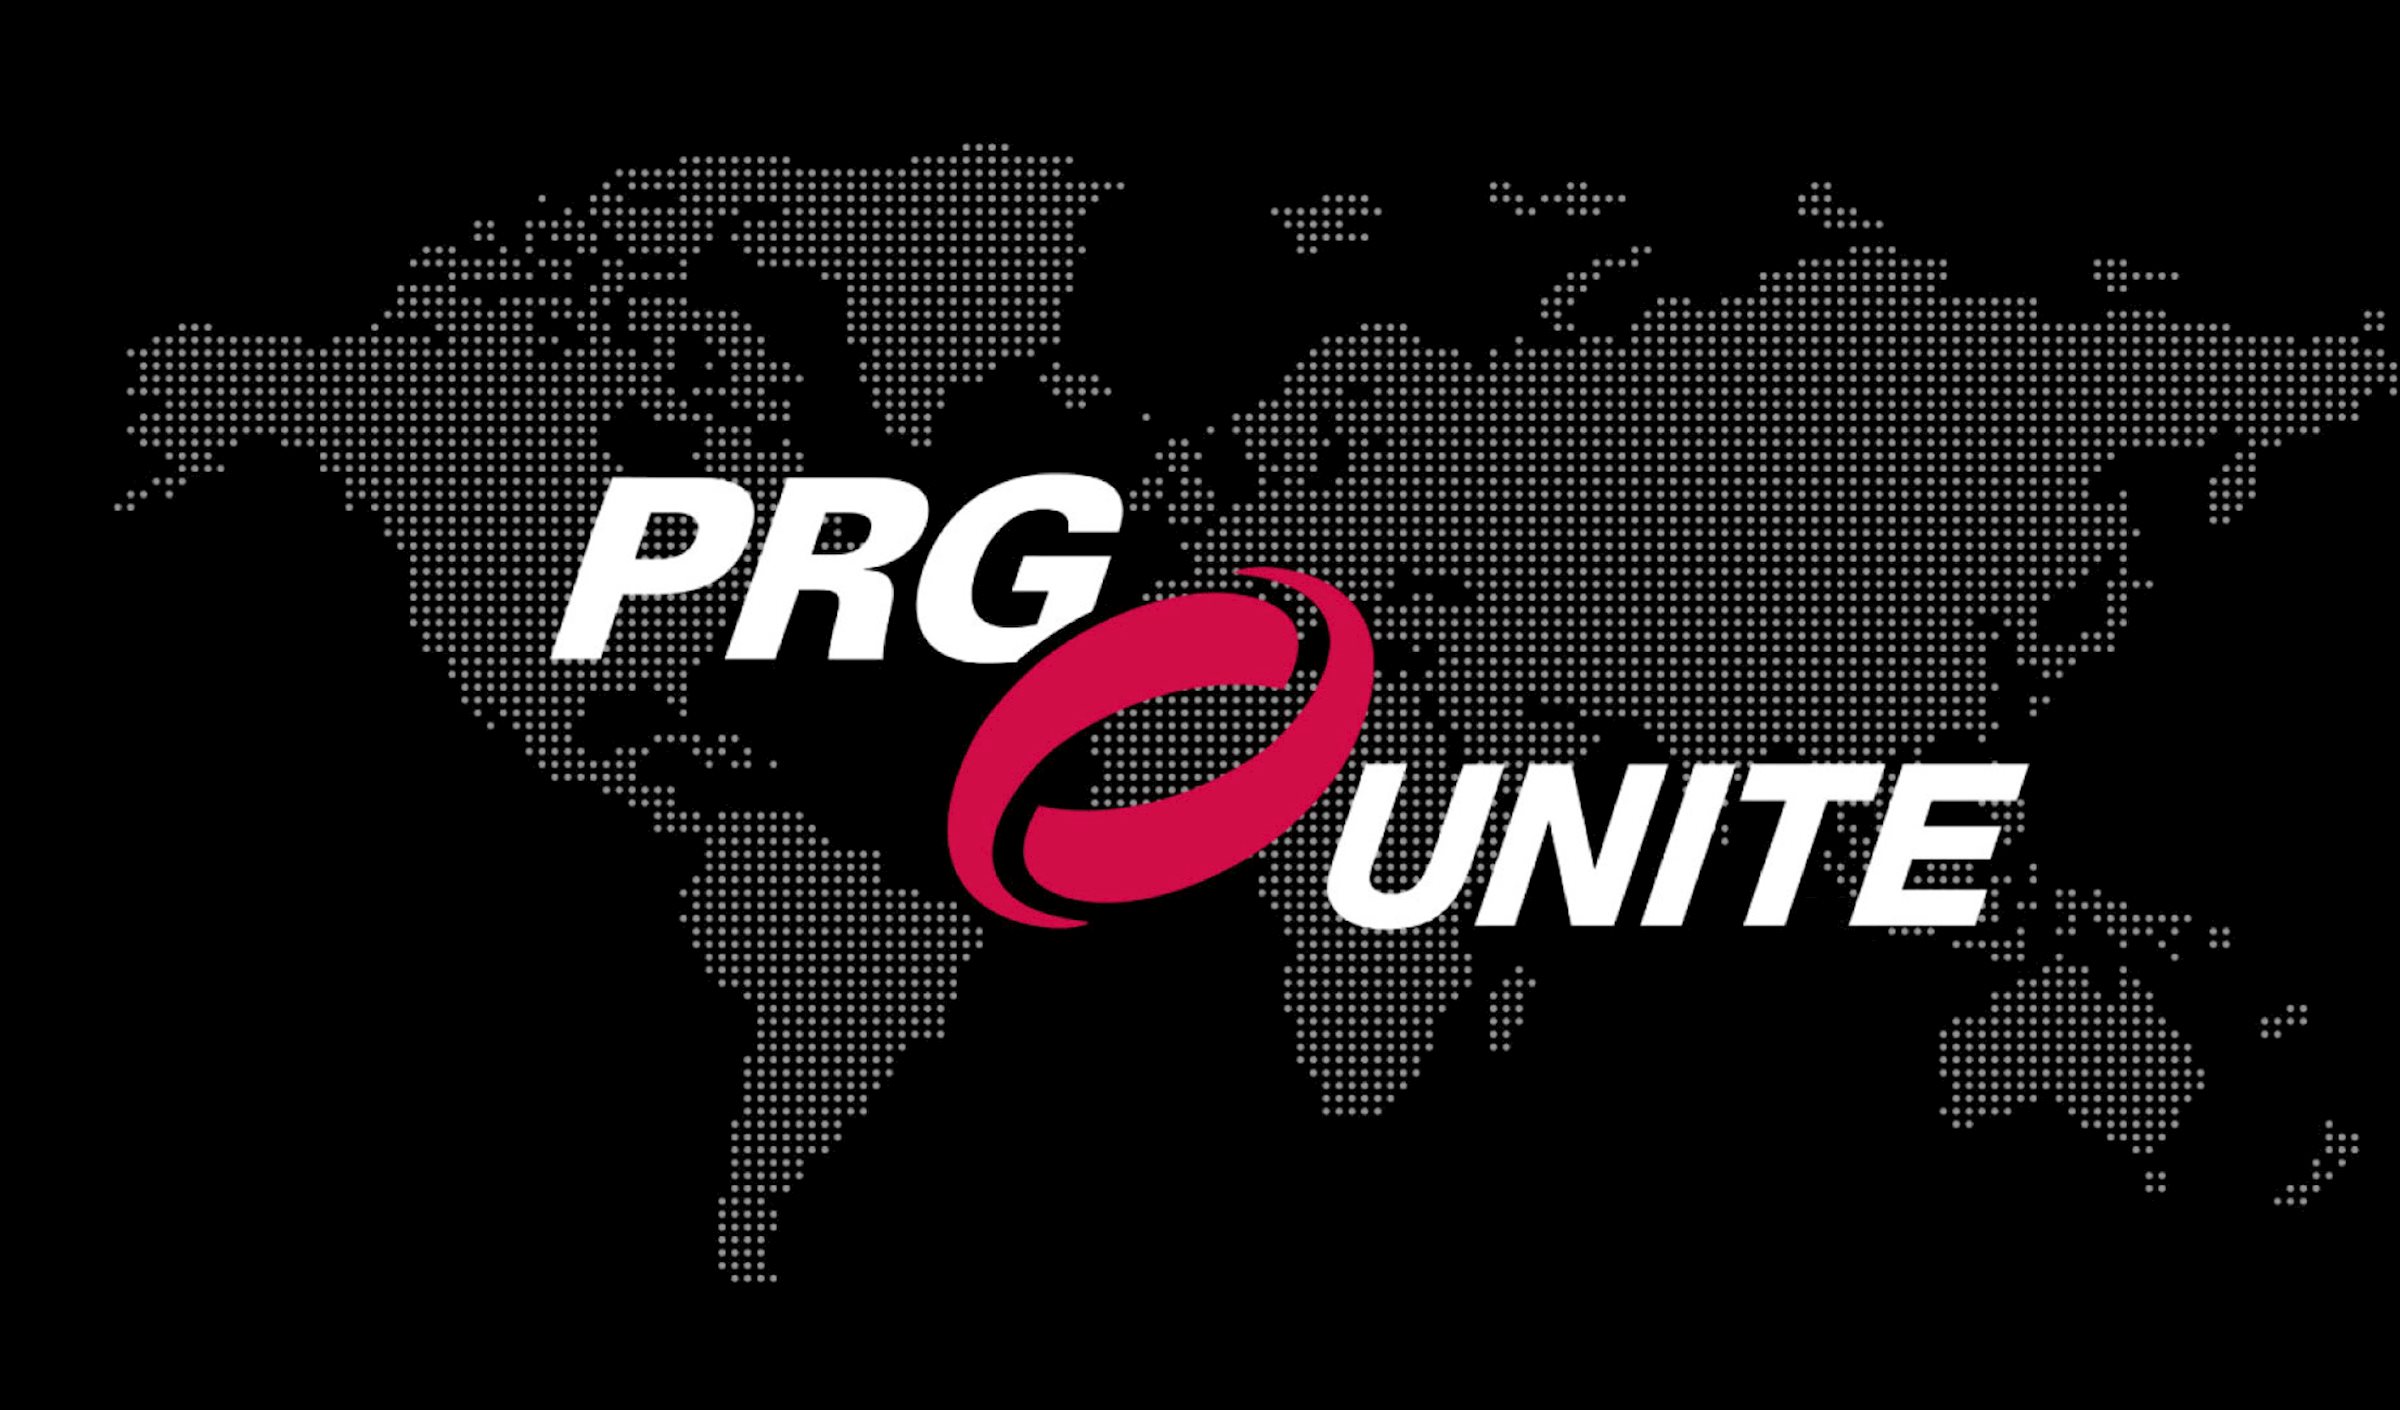 Nouvelle initiative du PRG : PRG UNITE. Un événement inspirant conçu pour rassembler toutes nos régions du monde en un seul lieu, afin de partager et de développer notre offre globale unique.